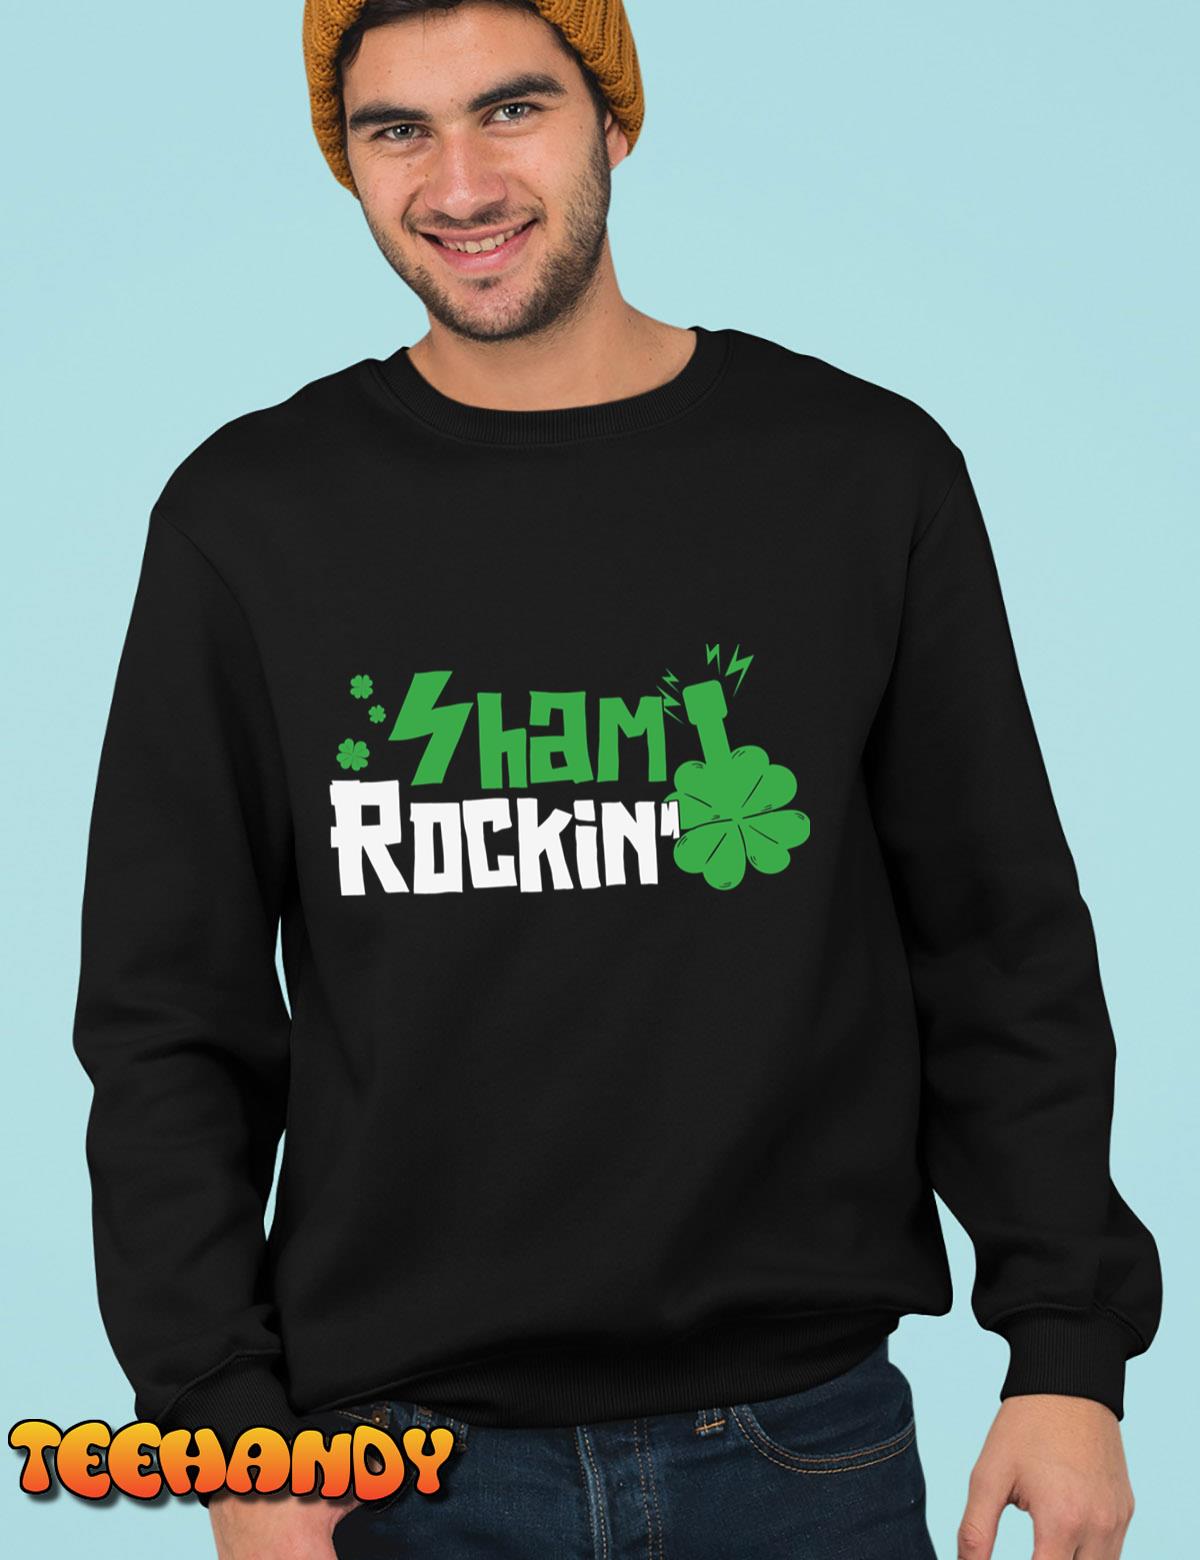 Sham Rockin St T-Shirt